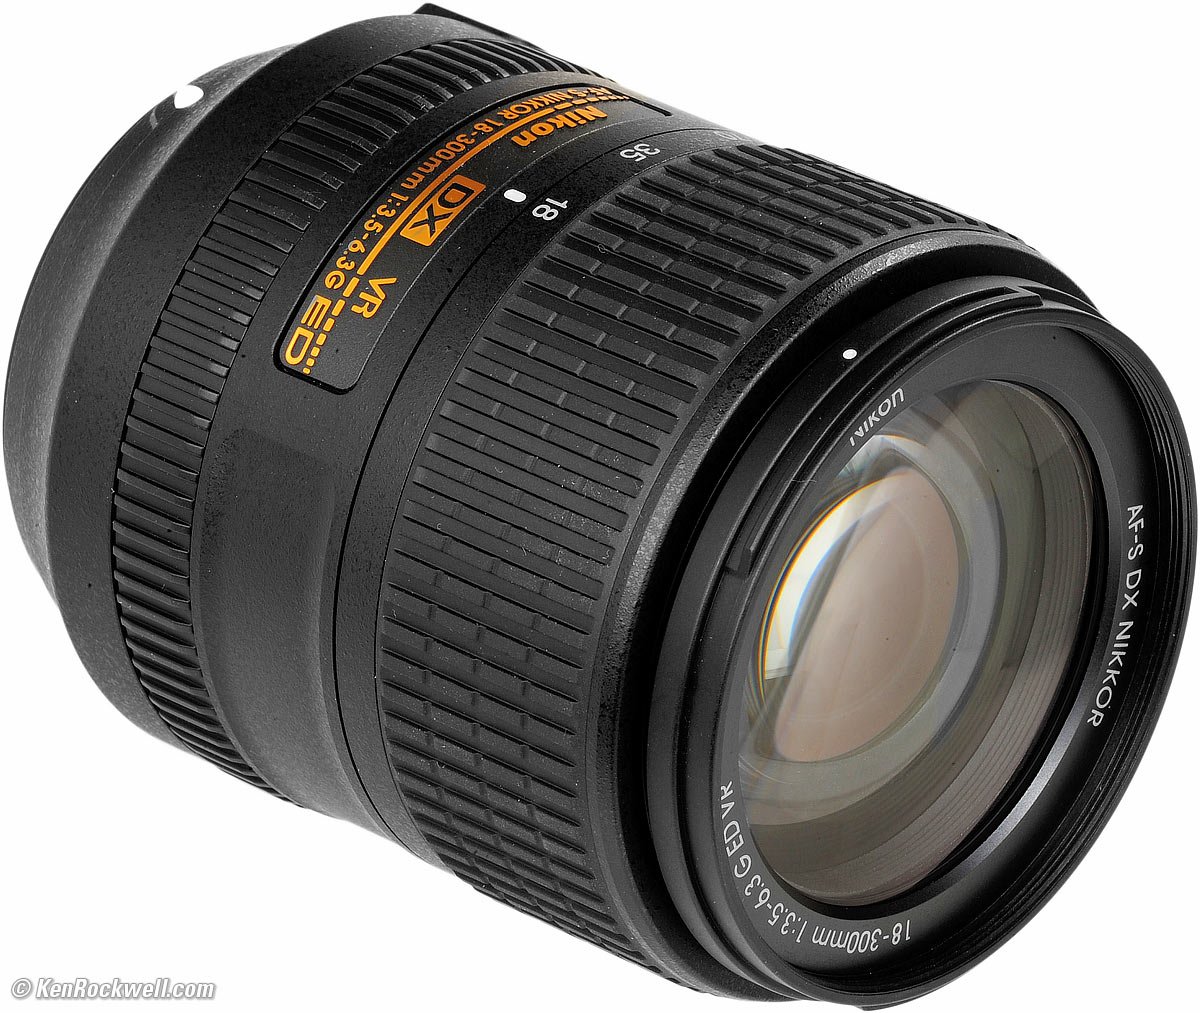 Nikon 18-300mm VR Review